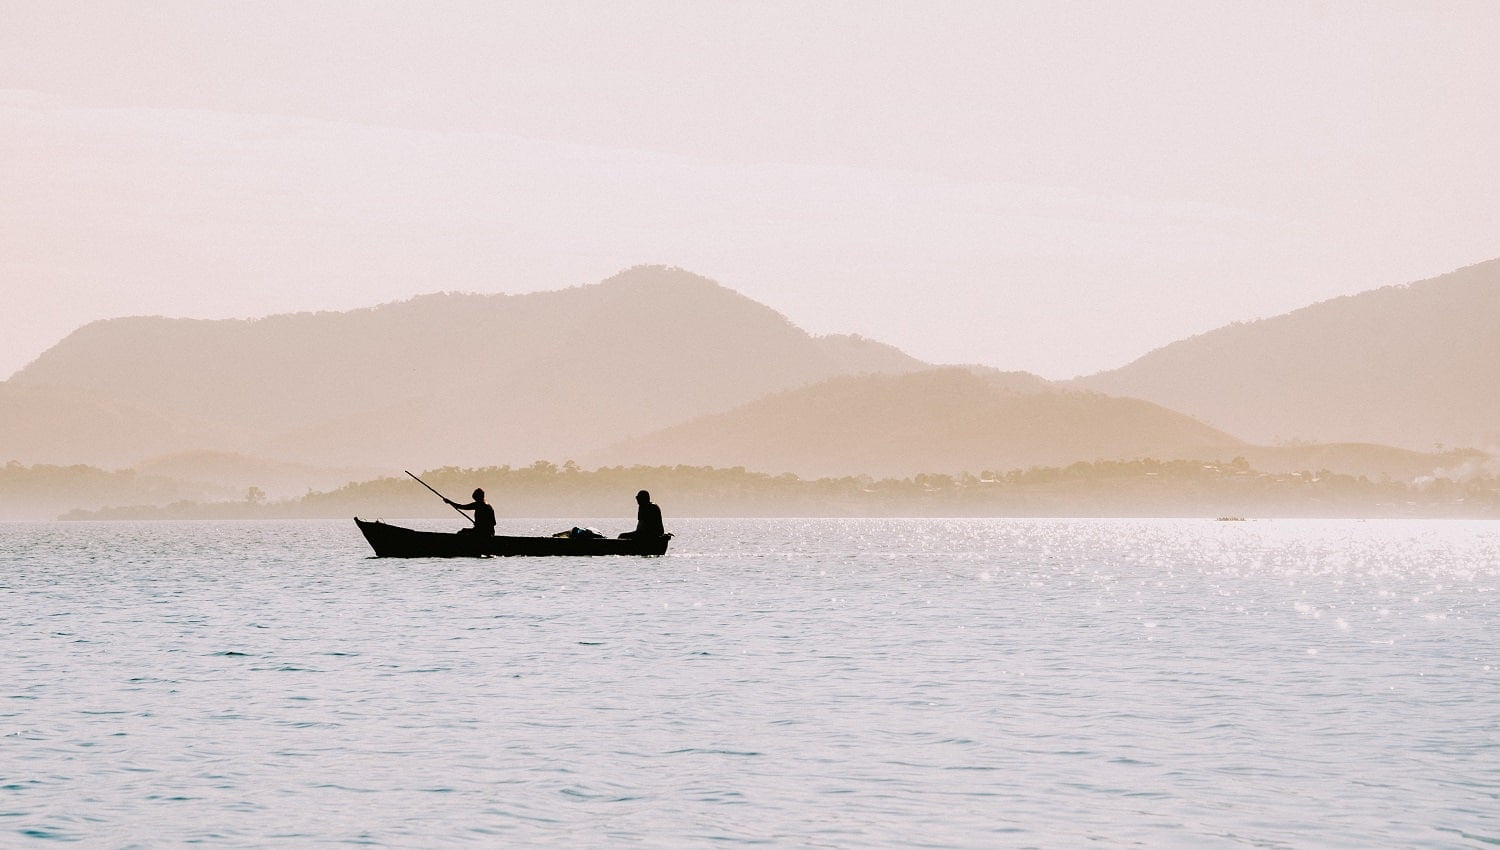 The silhouettes of fishermen in a small boat in Rio de Janeiro